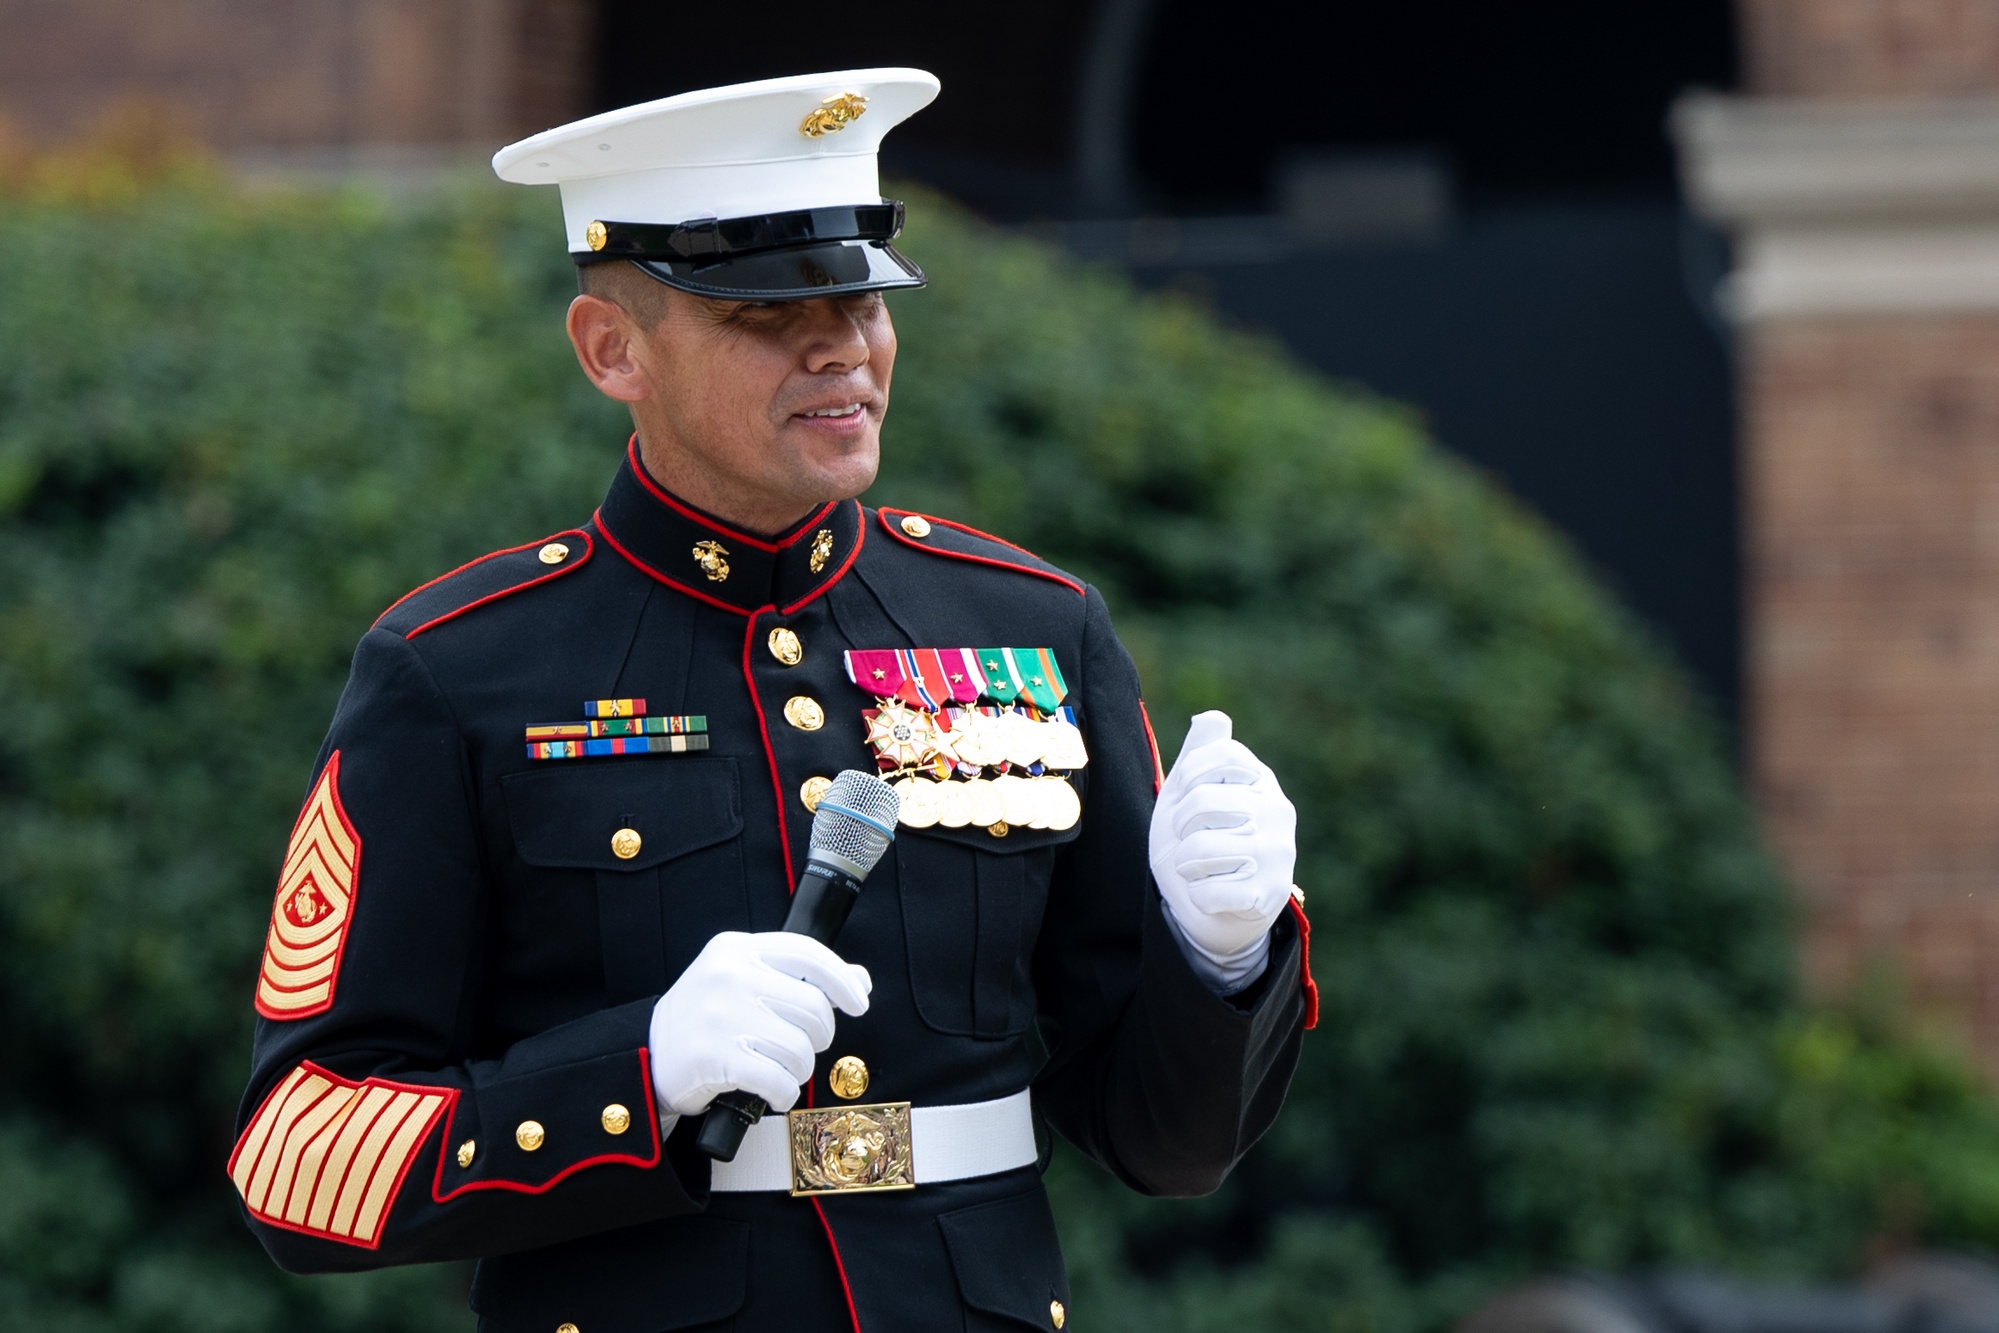 Carlos Ruiz - Overseas Military Advisor - United States Marine